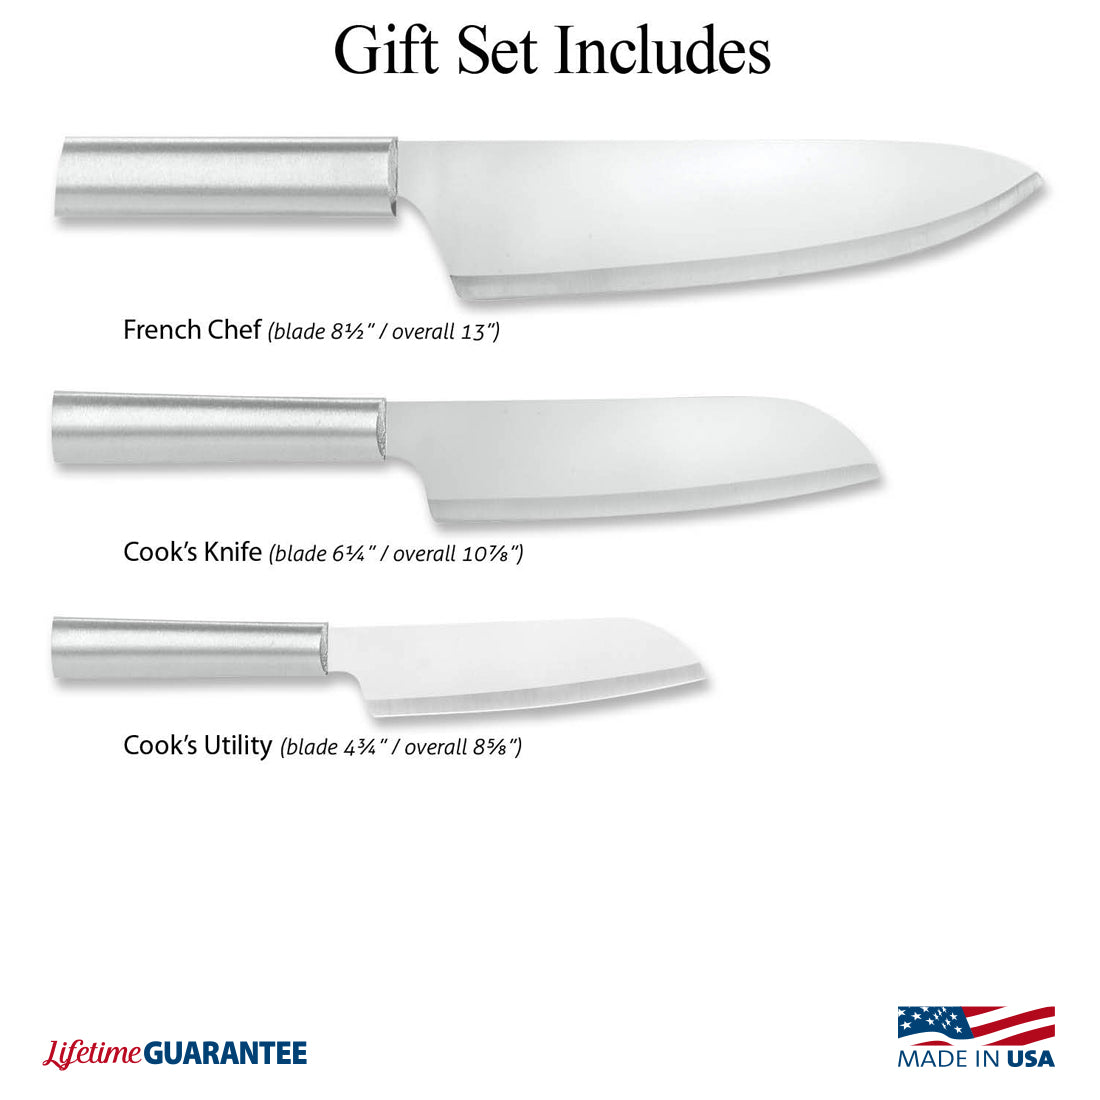 Chef Select Gift Set